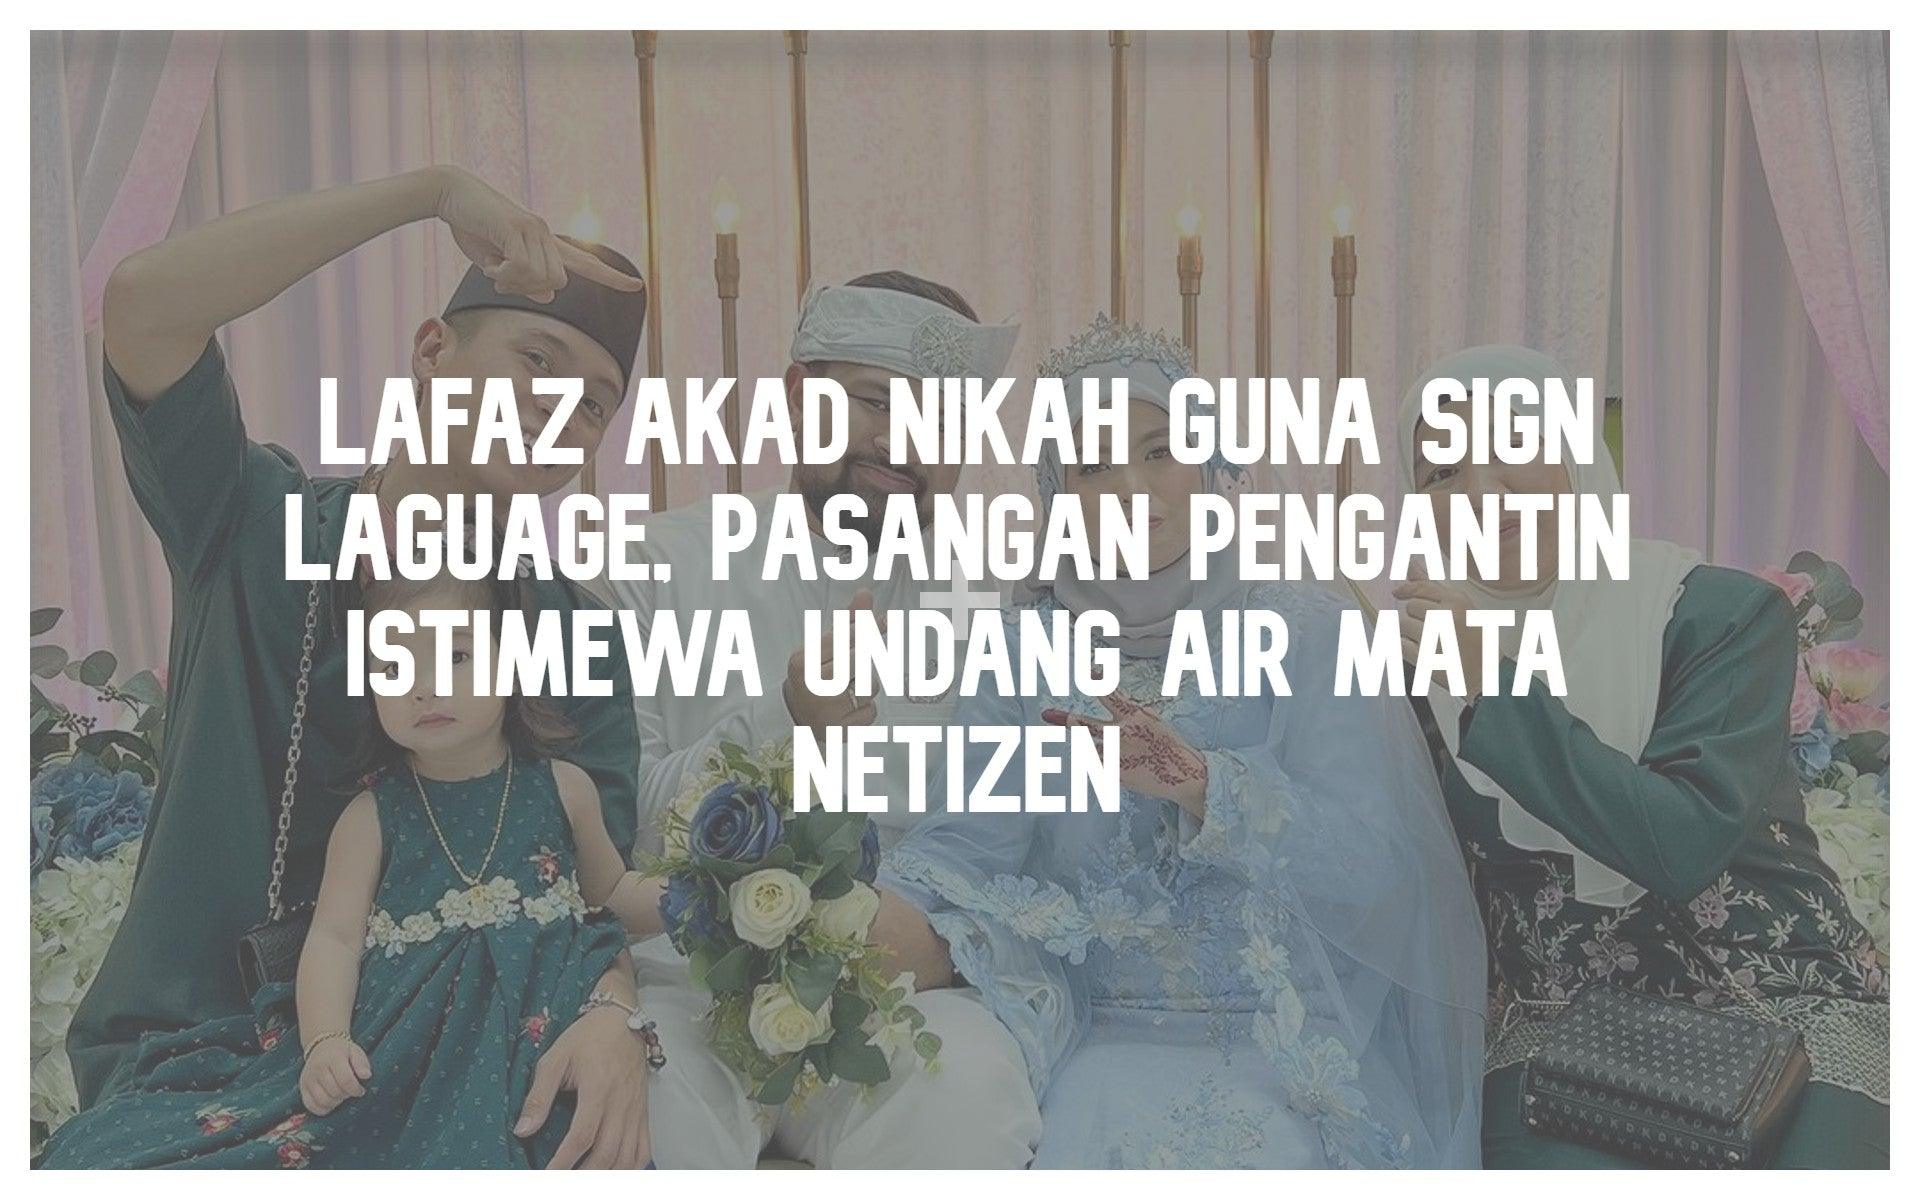 Lafaz Akad Nikah Guna Sign Laguage, Pasangan Pengantin Istimewa Undang Air Mata Netizen - PP Signature